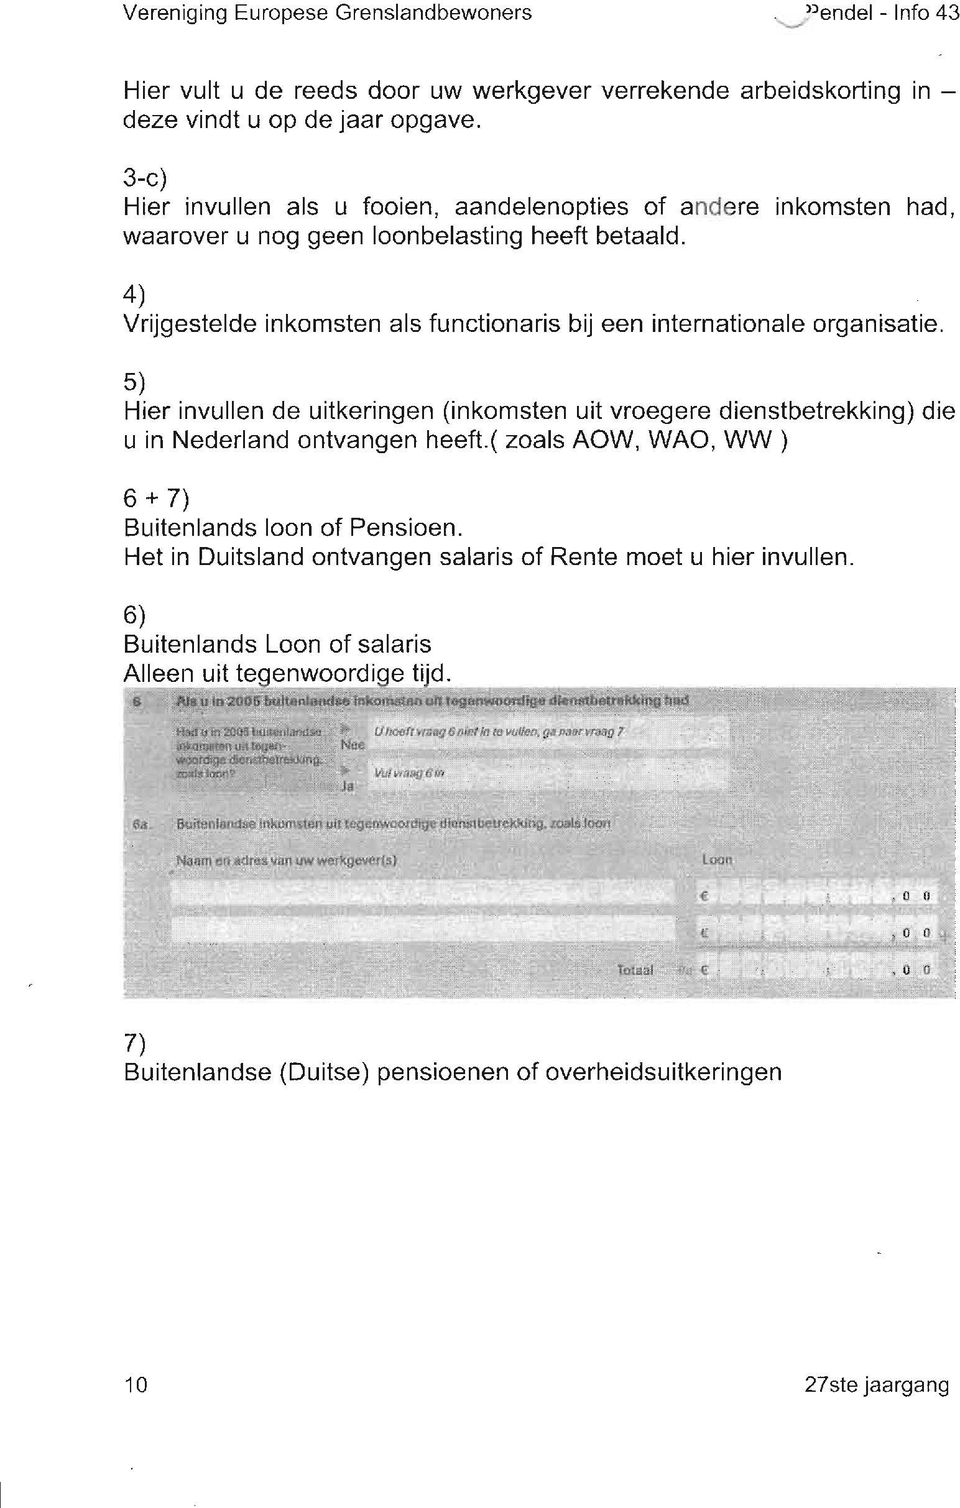 4) Vrijgestelde inkomsten als functionaris bij een internationale organisatie. 5) Hier invullen de uitkeringen (inkomsten uit vroegere dienstbetrekking) u in Nederland ontvangen heeft.